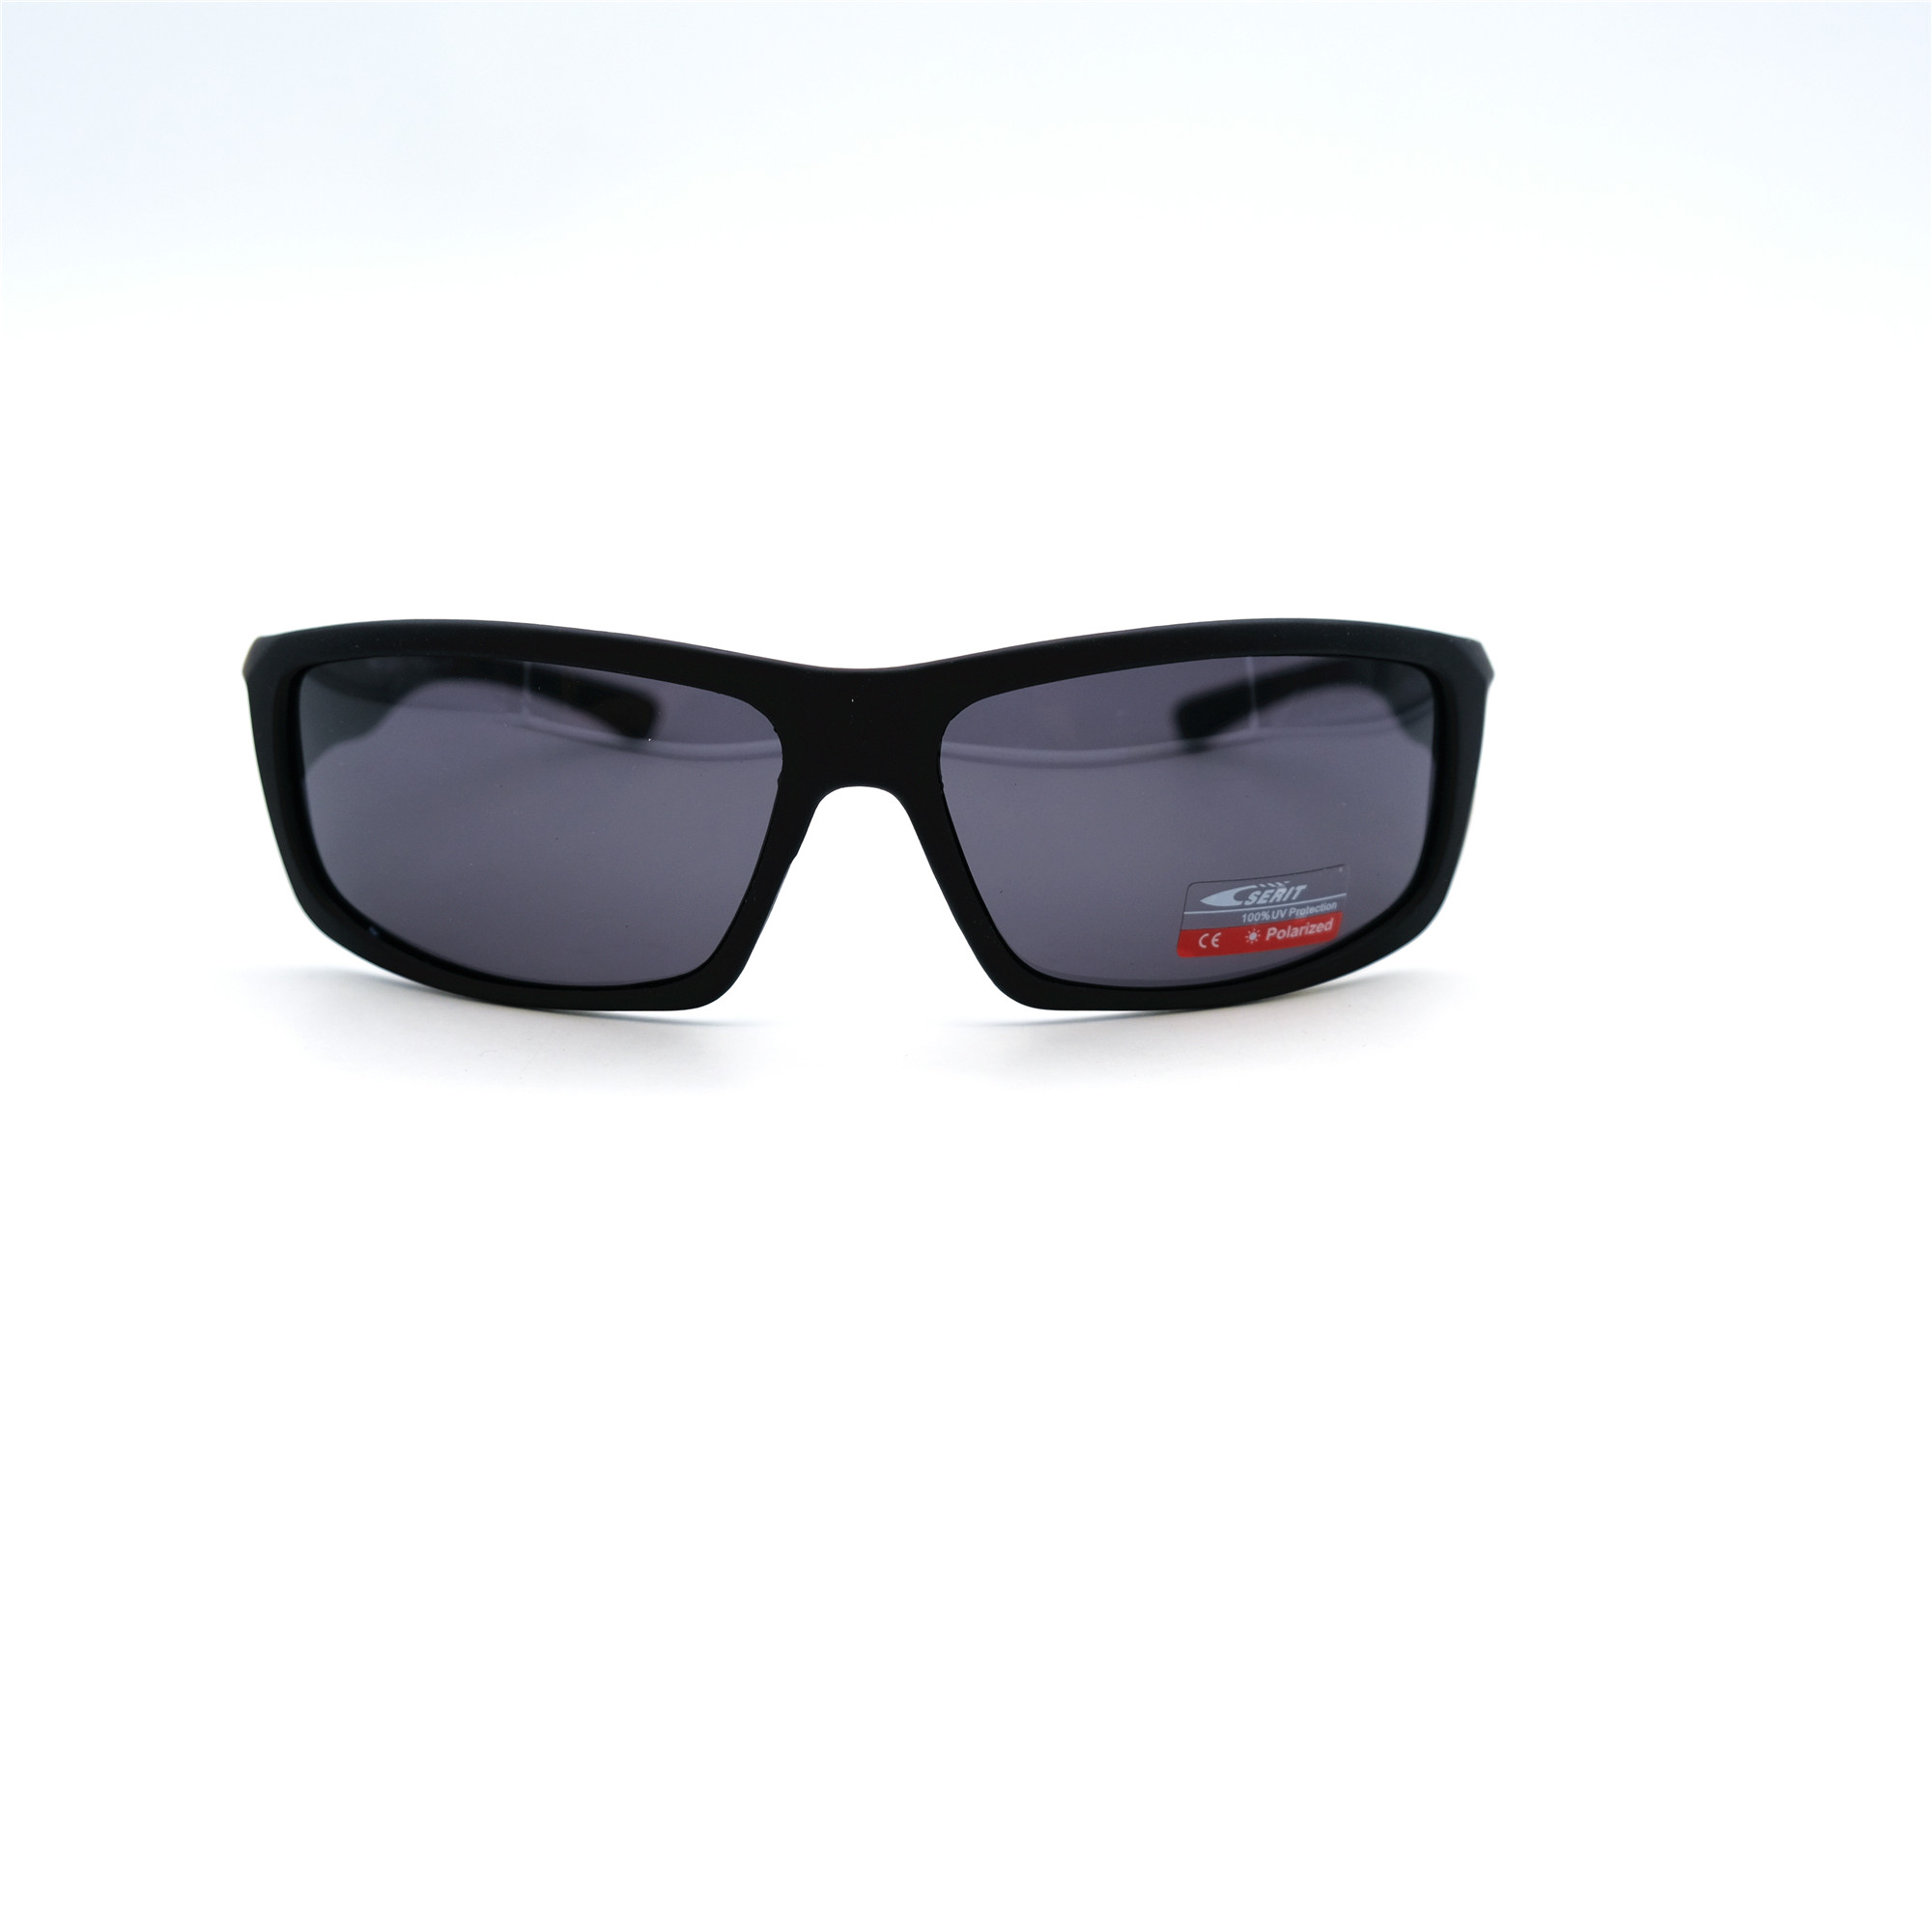  Солнцезащитные очки картинка Мужские Serit Polarized Спорт SP318-C3 